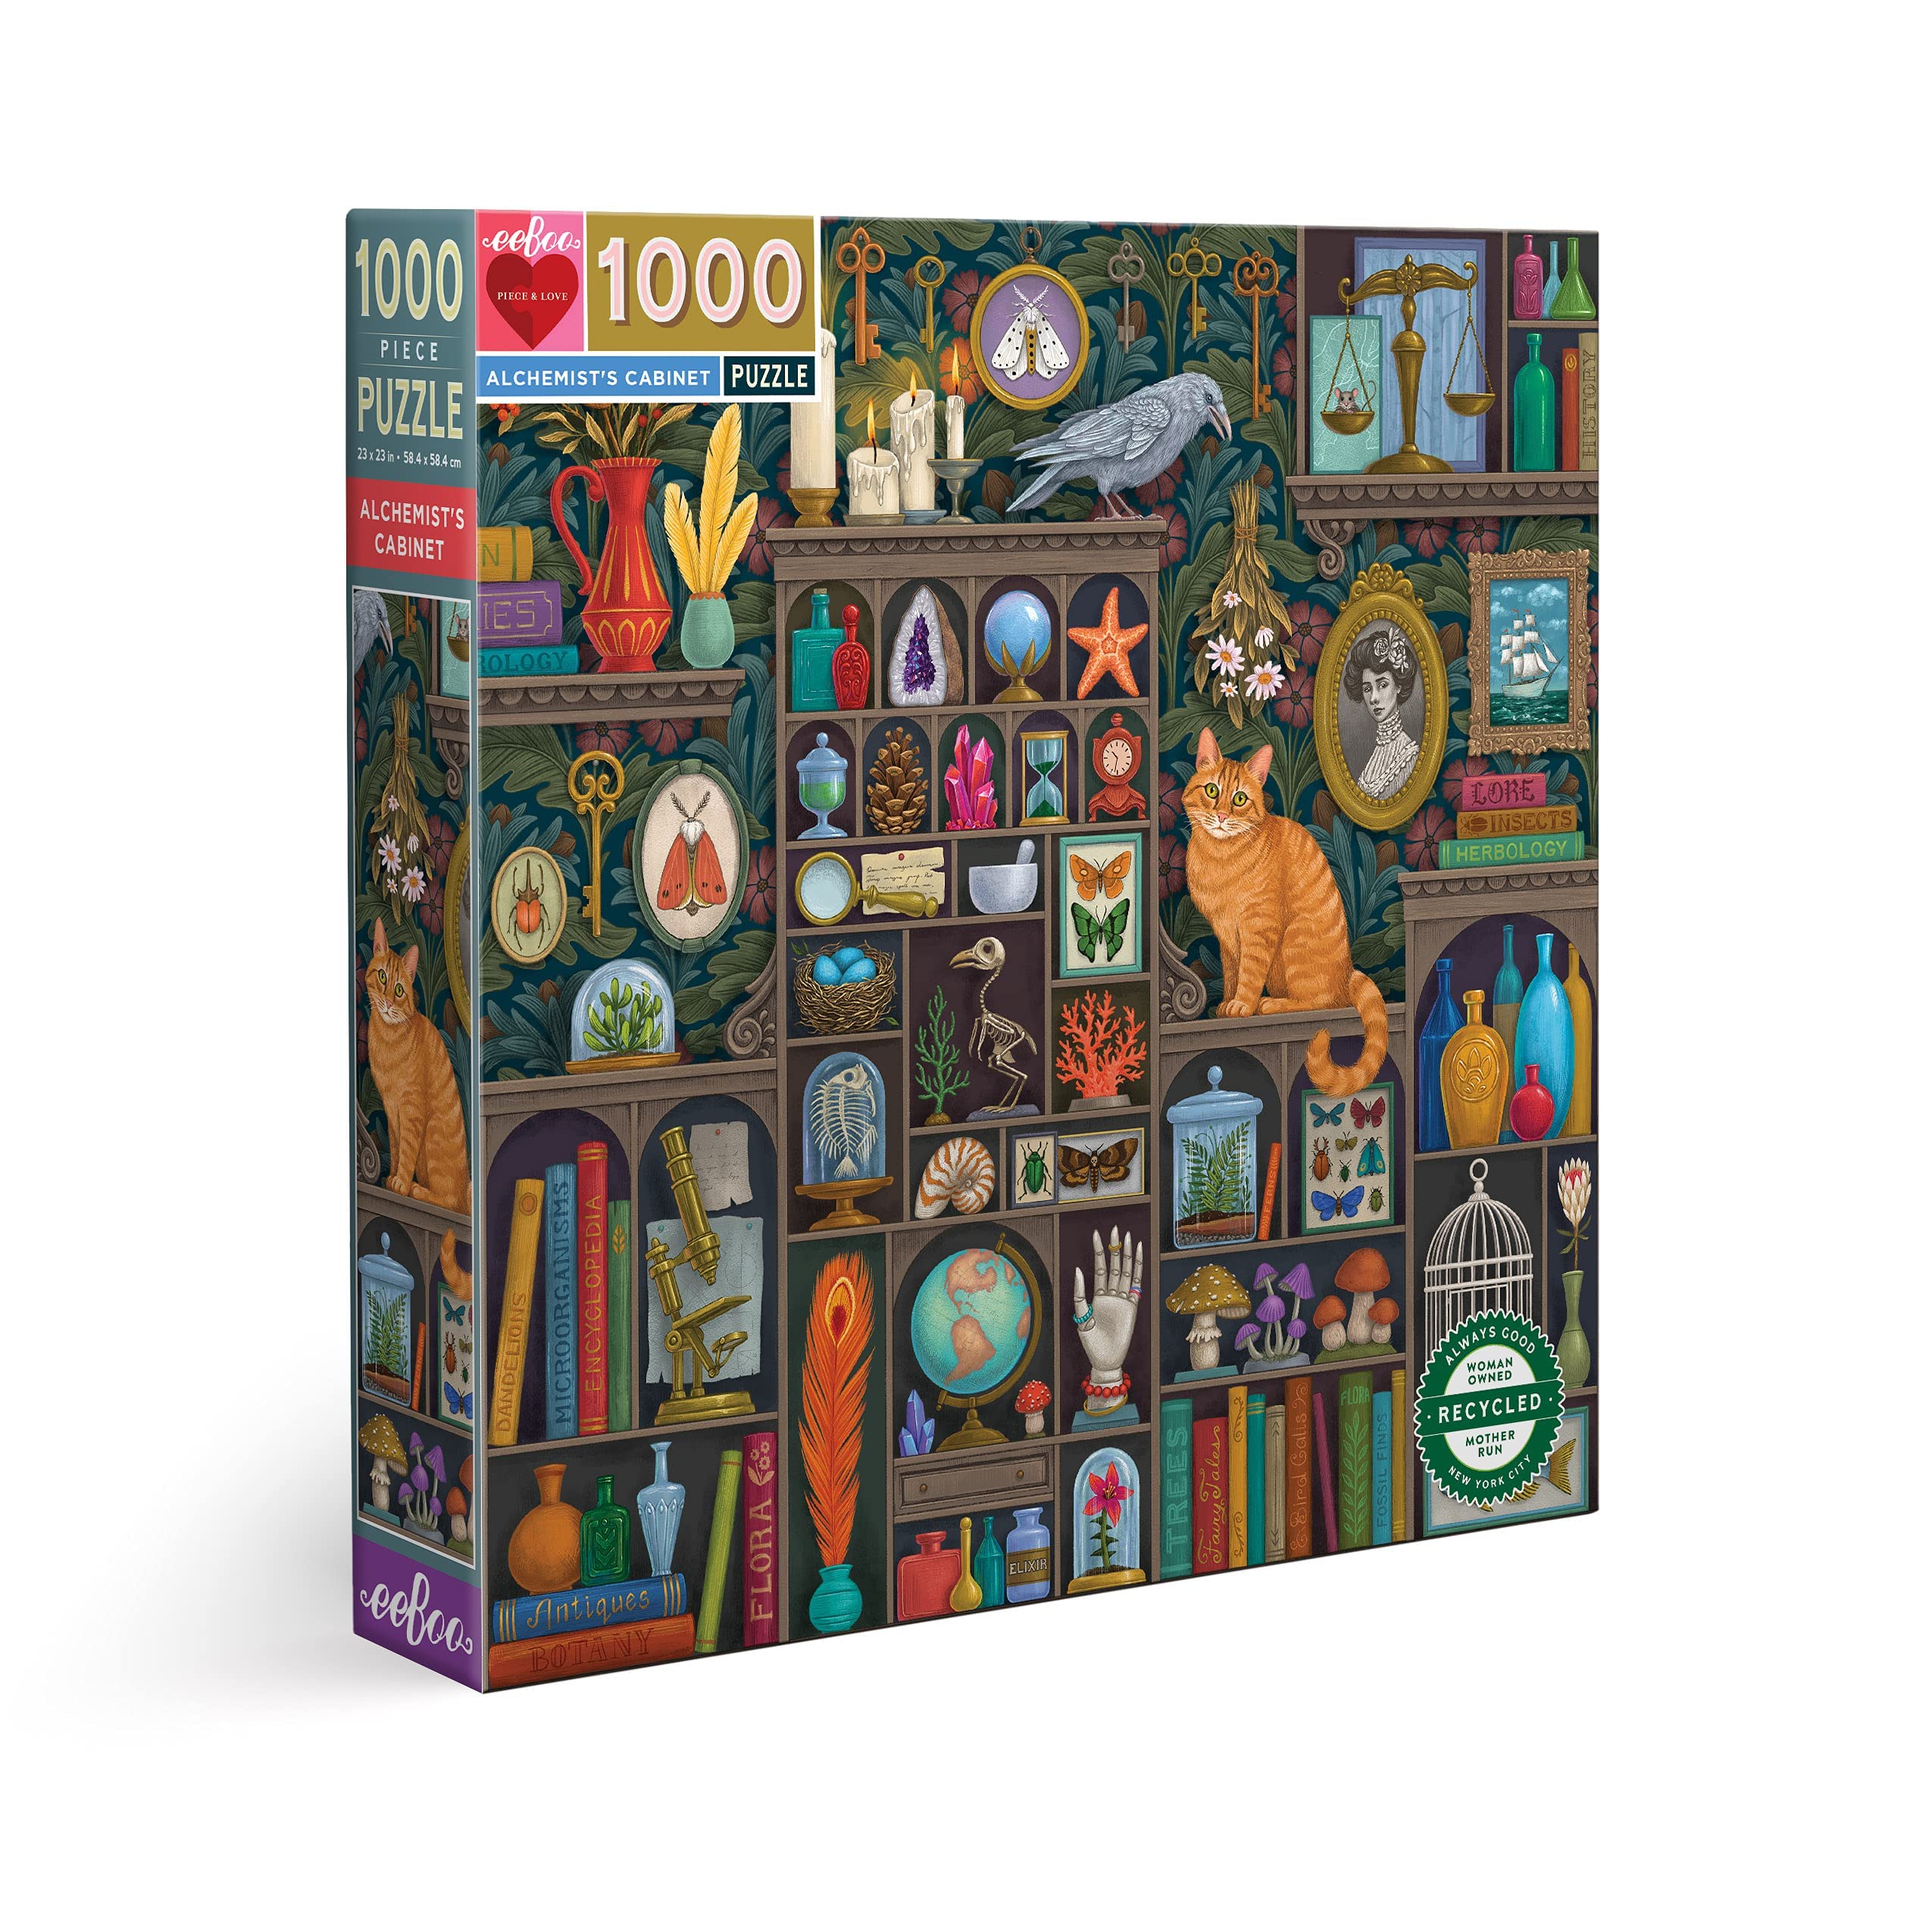 pas cher eeBoo- Cabinet de l’alchimiste Adulte avec des détails fascinants – Puzzle 1000 pièces en Carton recyclé-PZTALC, Multicolore TT4G6On8s Vente chaude